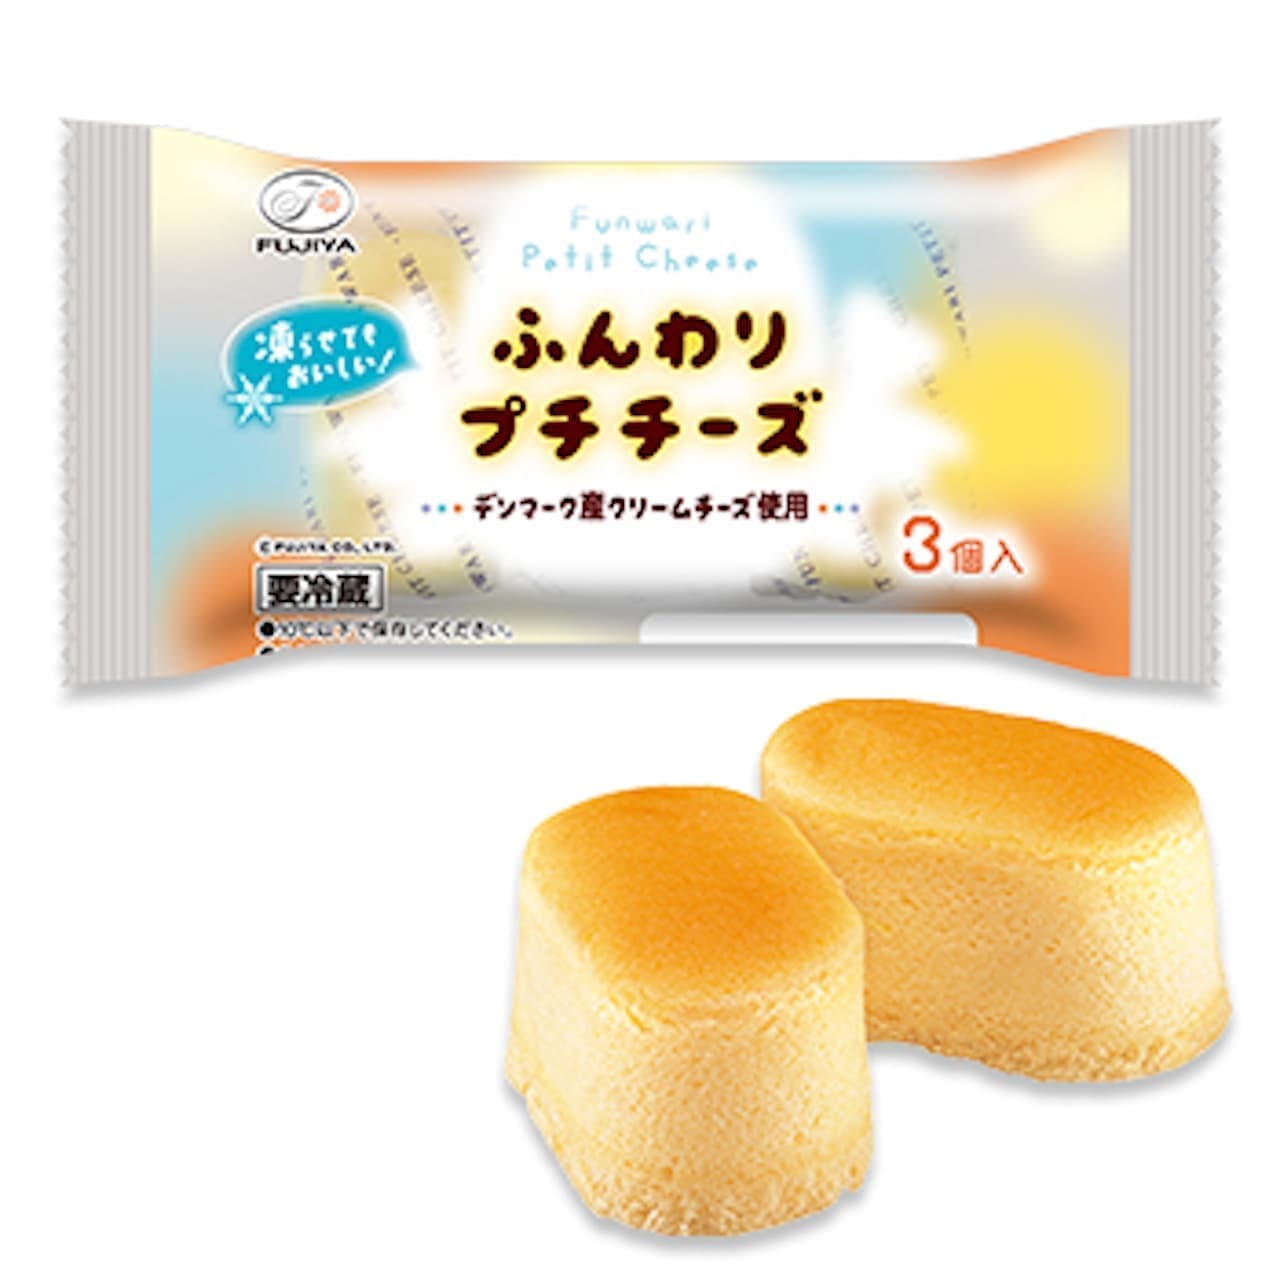 Fujiya "Fluffy Petit Cheese (3 pieces)